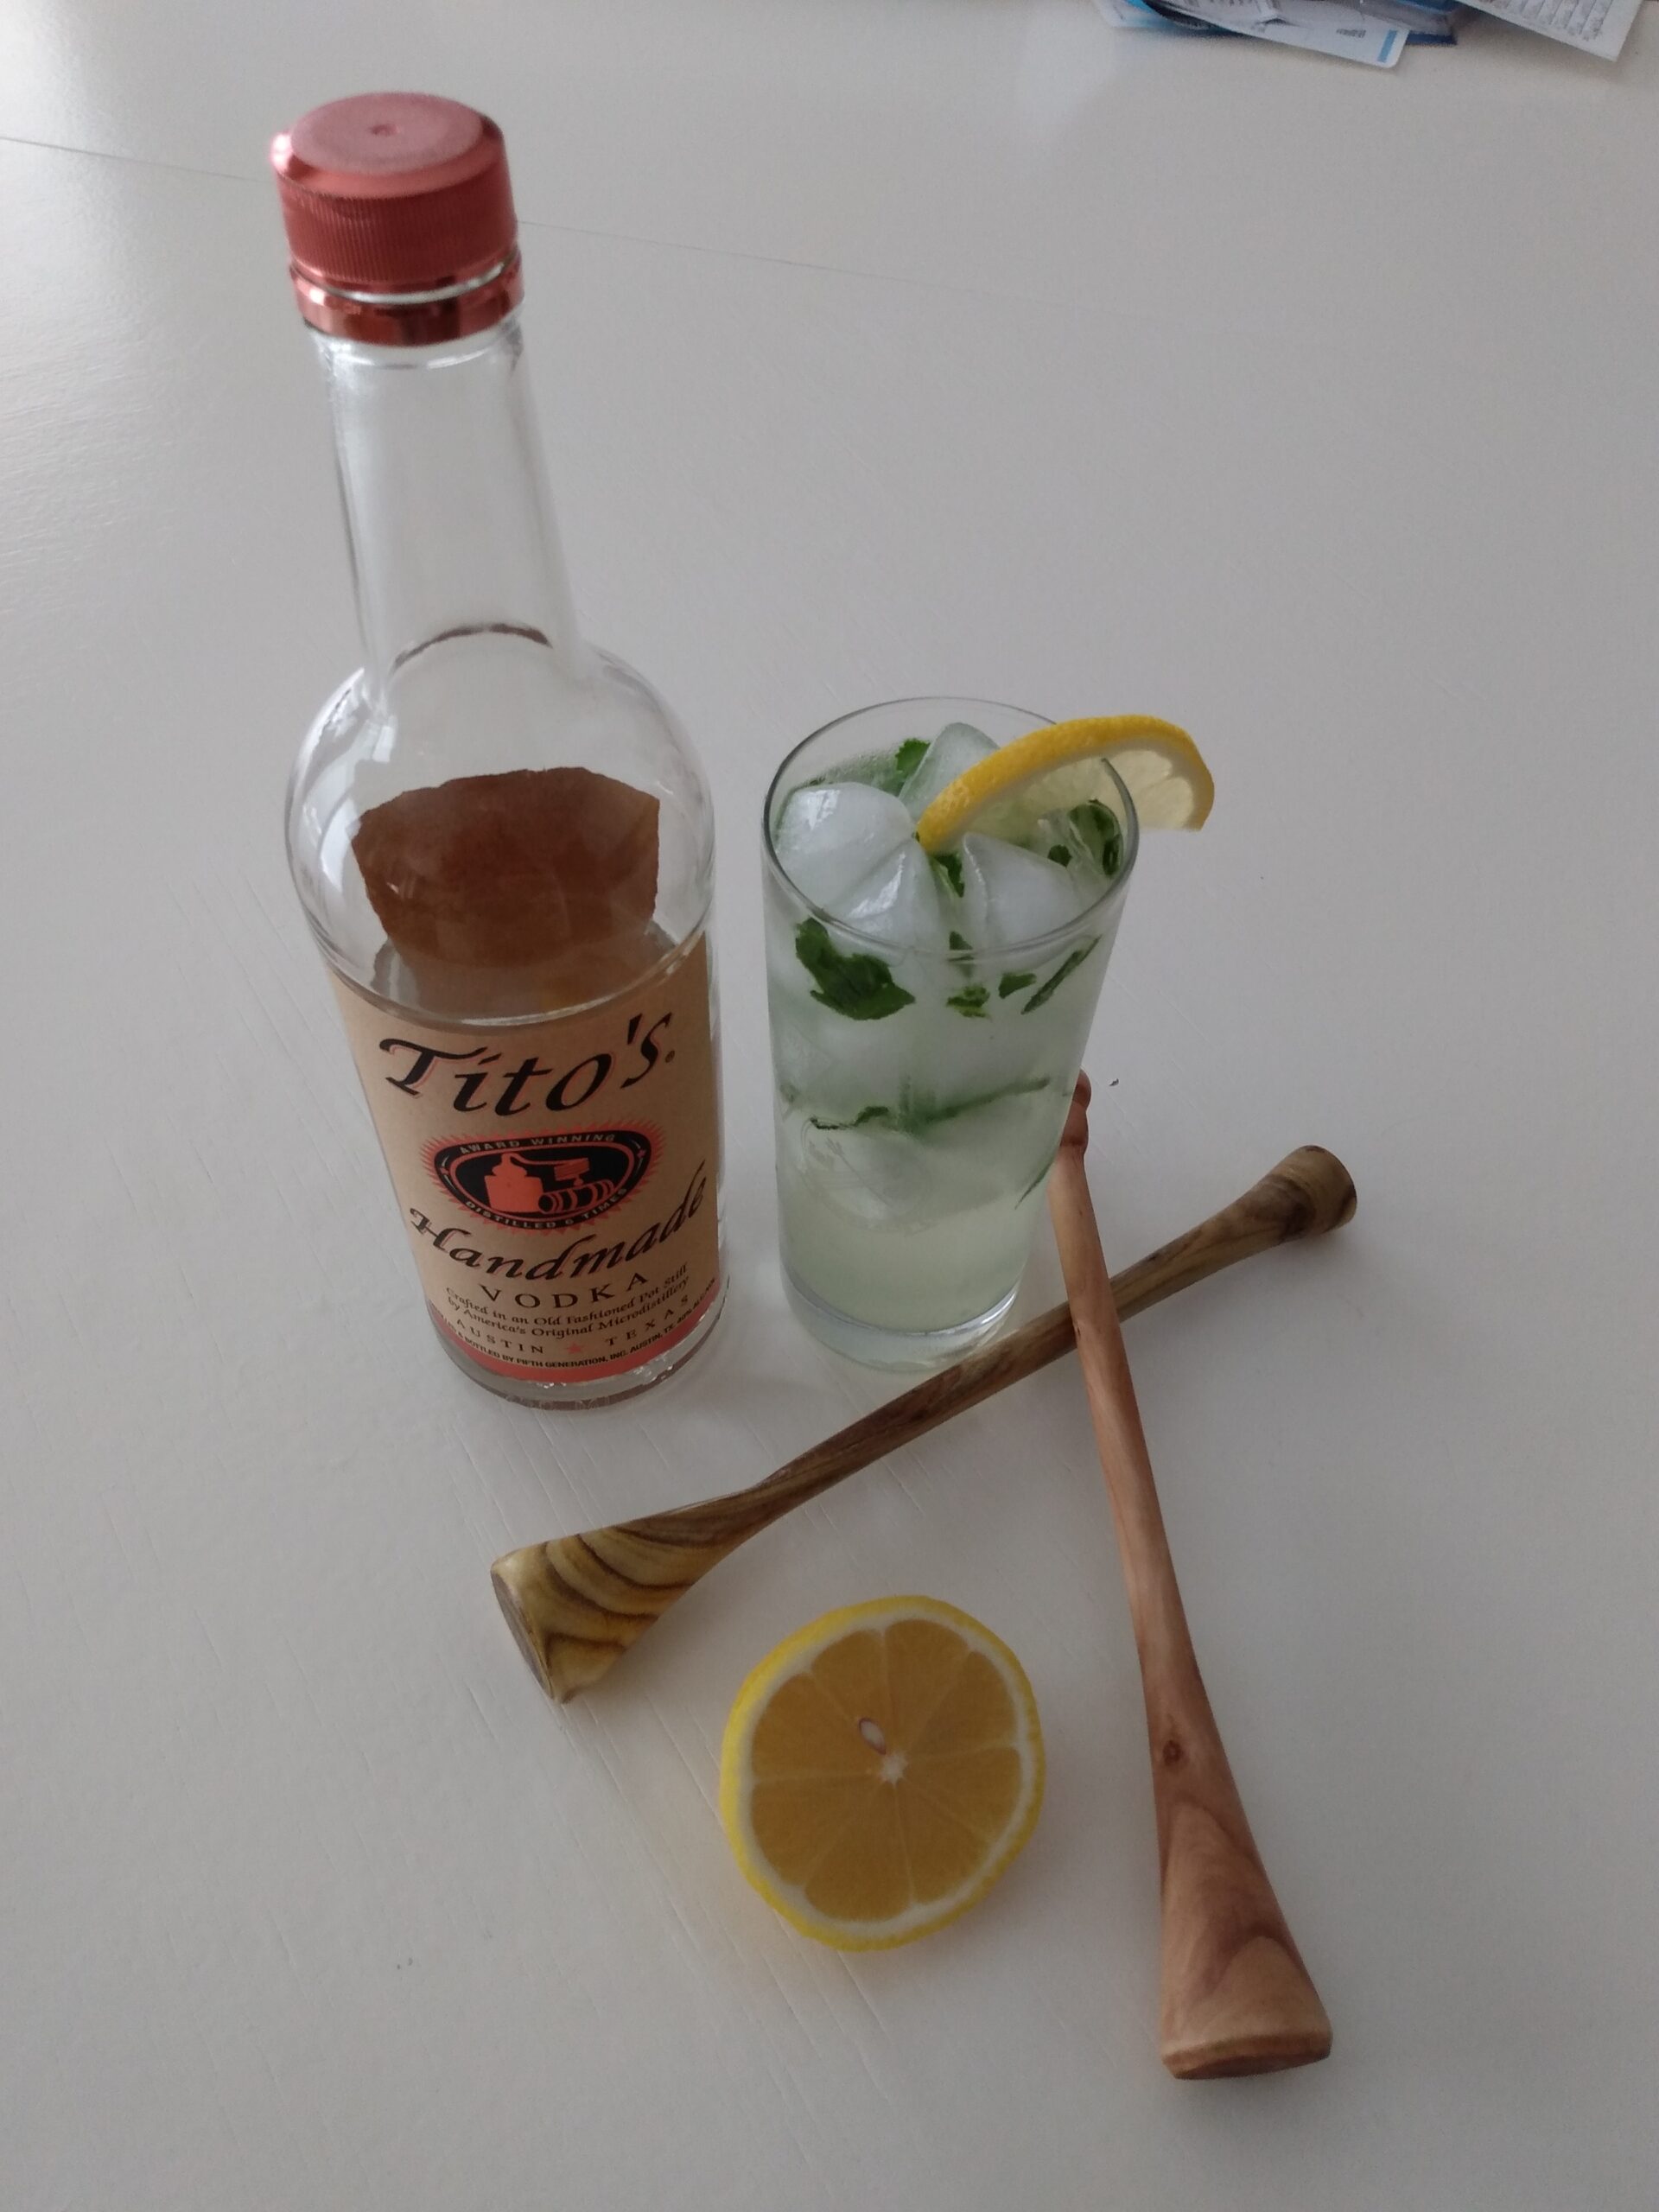 Finished Muddler with Basil Lemon Vodka Cocktail